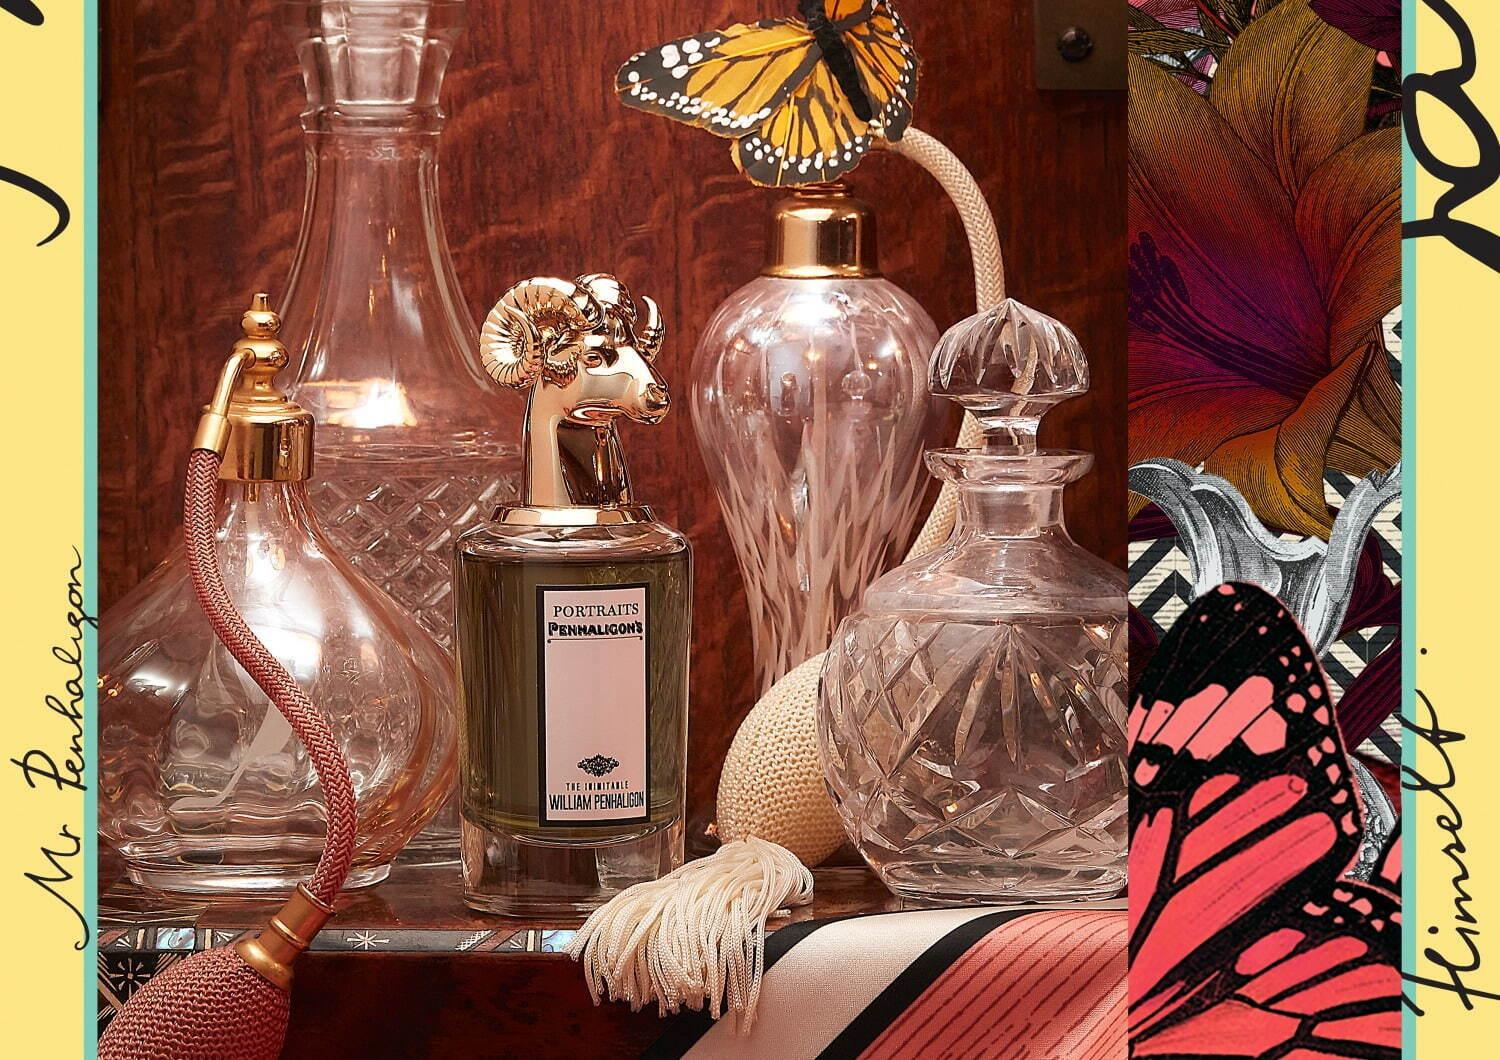 ペンハリガン“ブランド創業者”イメージの新香水、ベチバー香るジェントルマンのためのフレグランス コピー